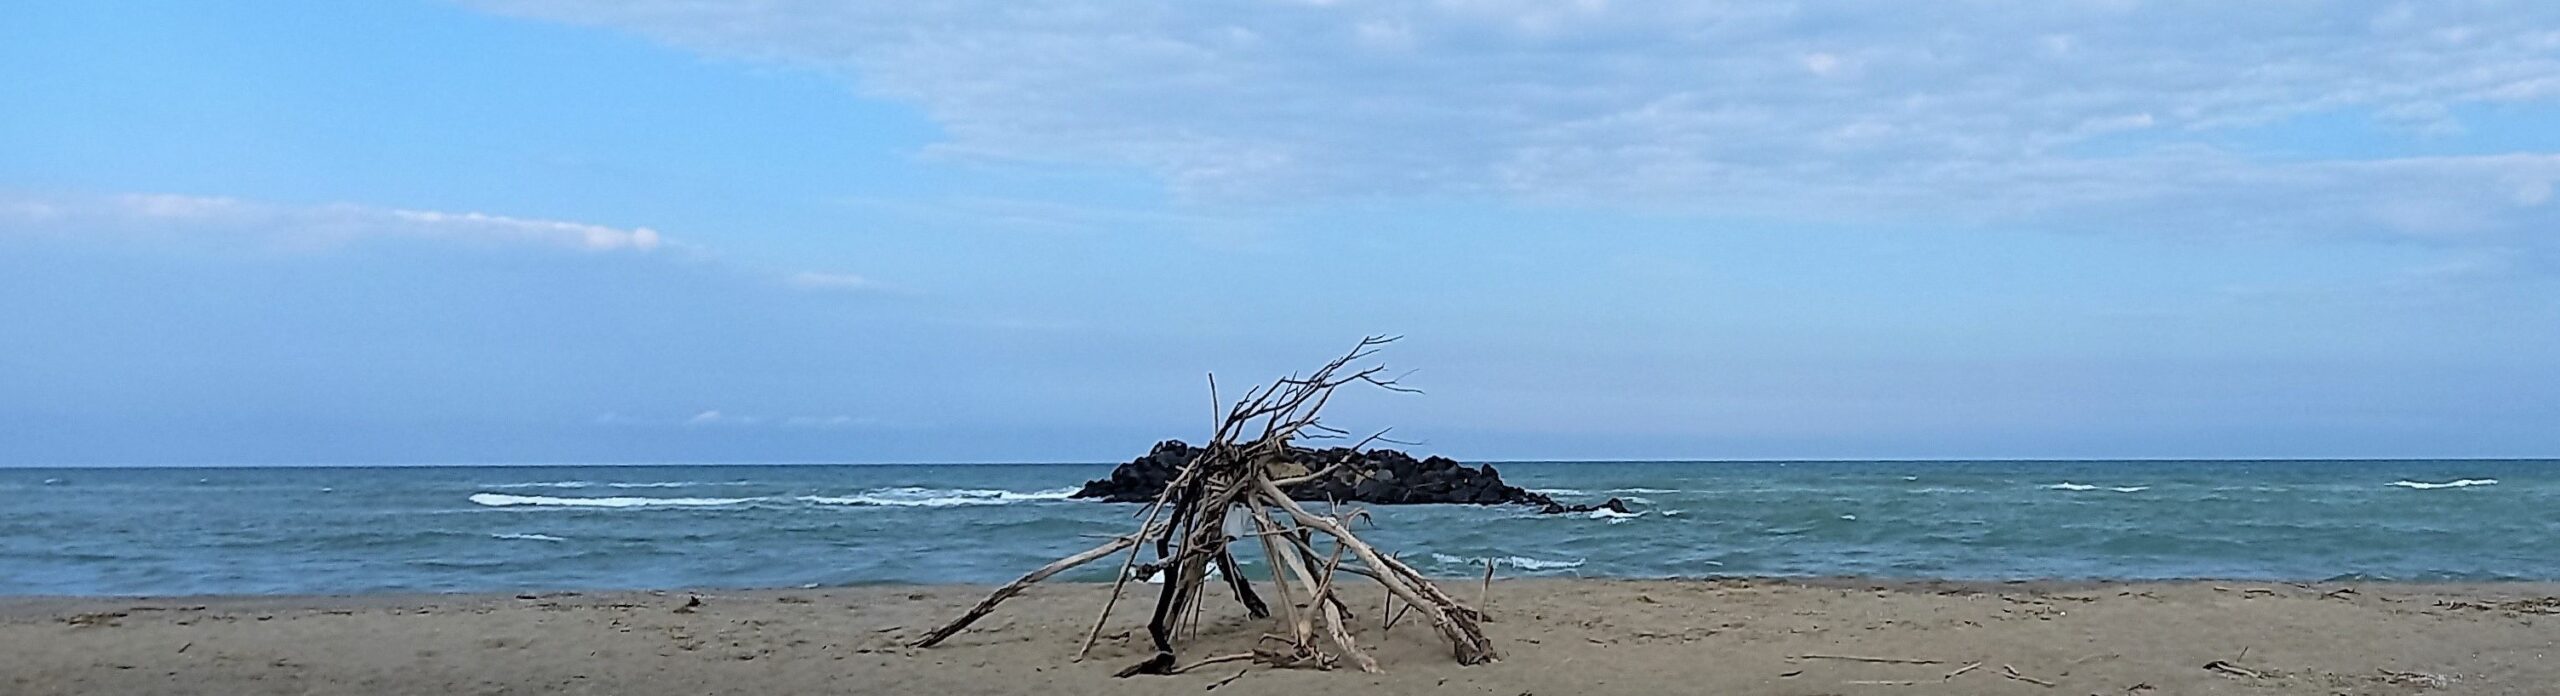 oasi della playa catania visionaria congiunzione simeto 1mqdb imprints of peace respect planet